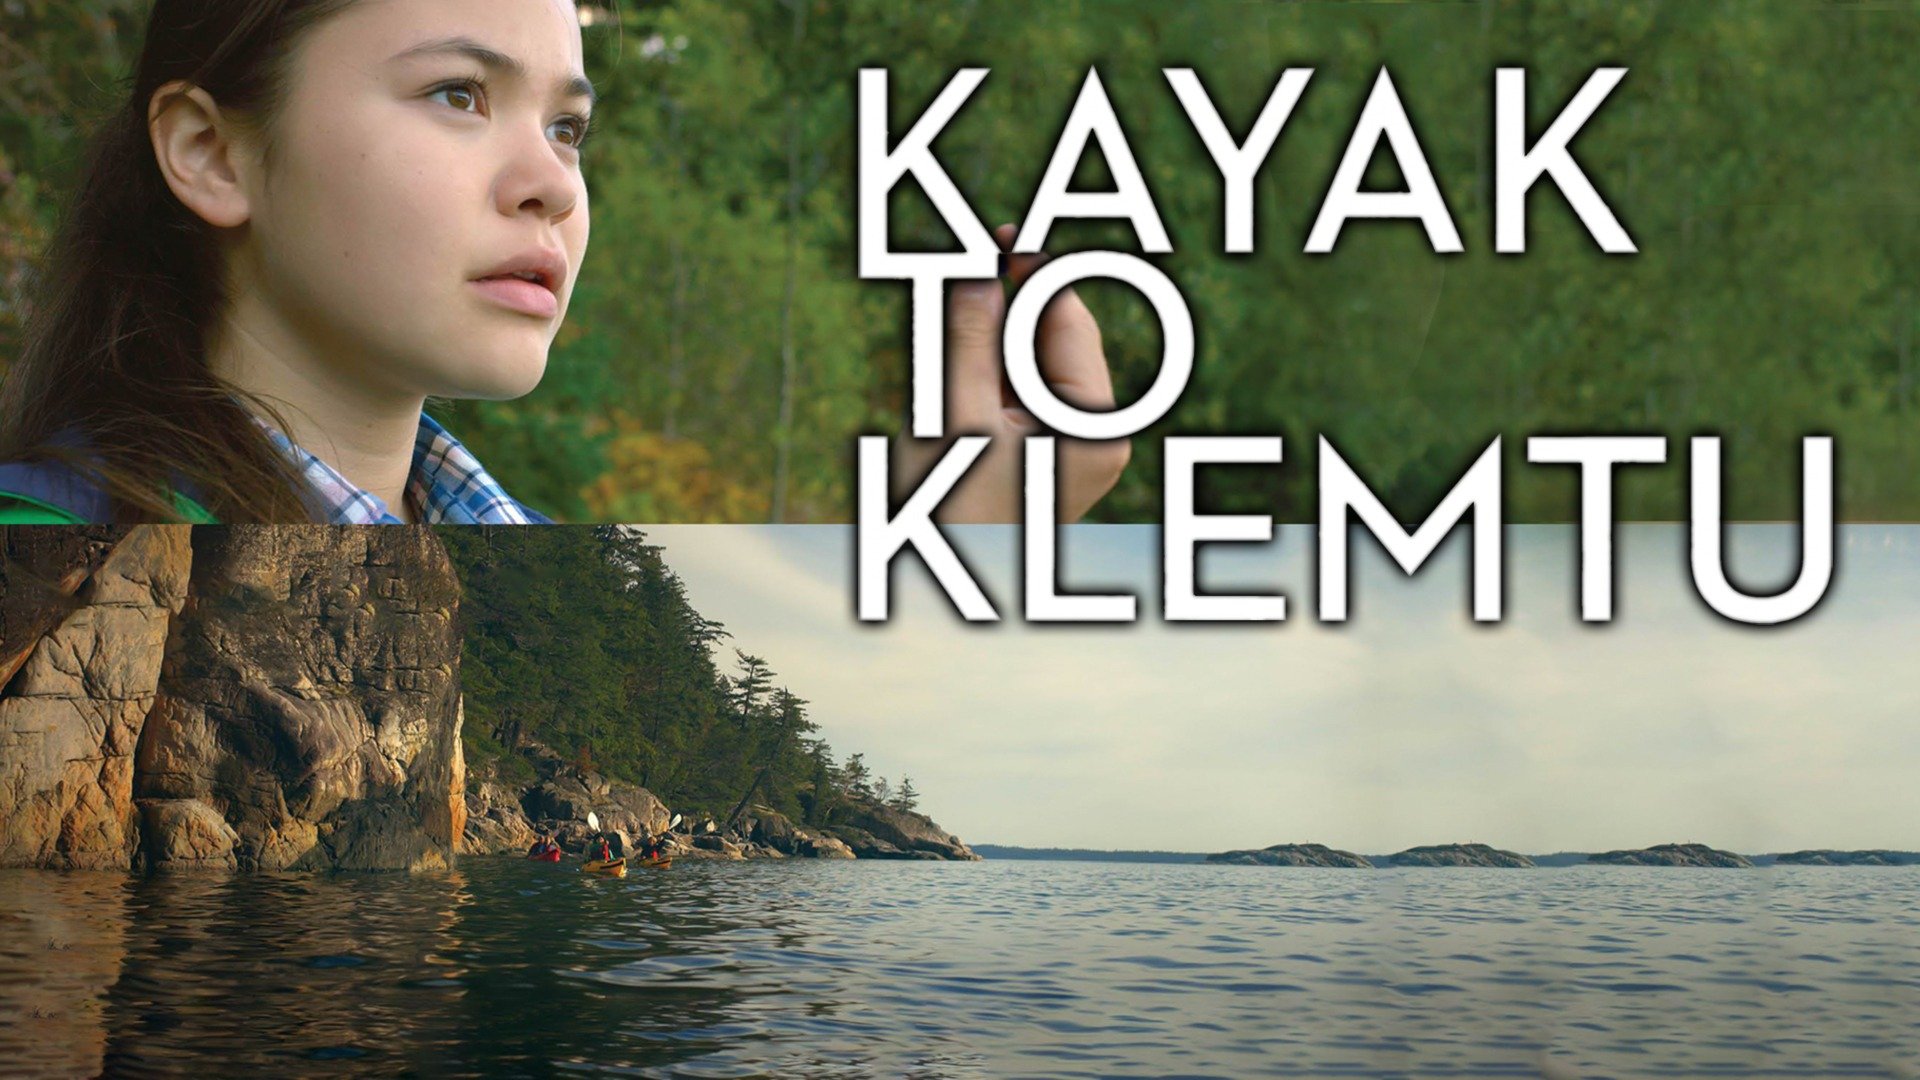 Kayak to Klemtu - Indigenous movies for kids